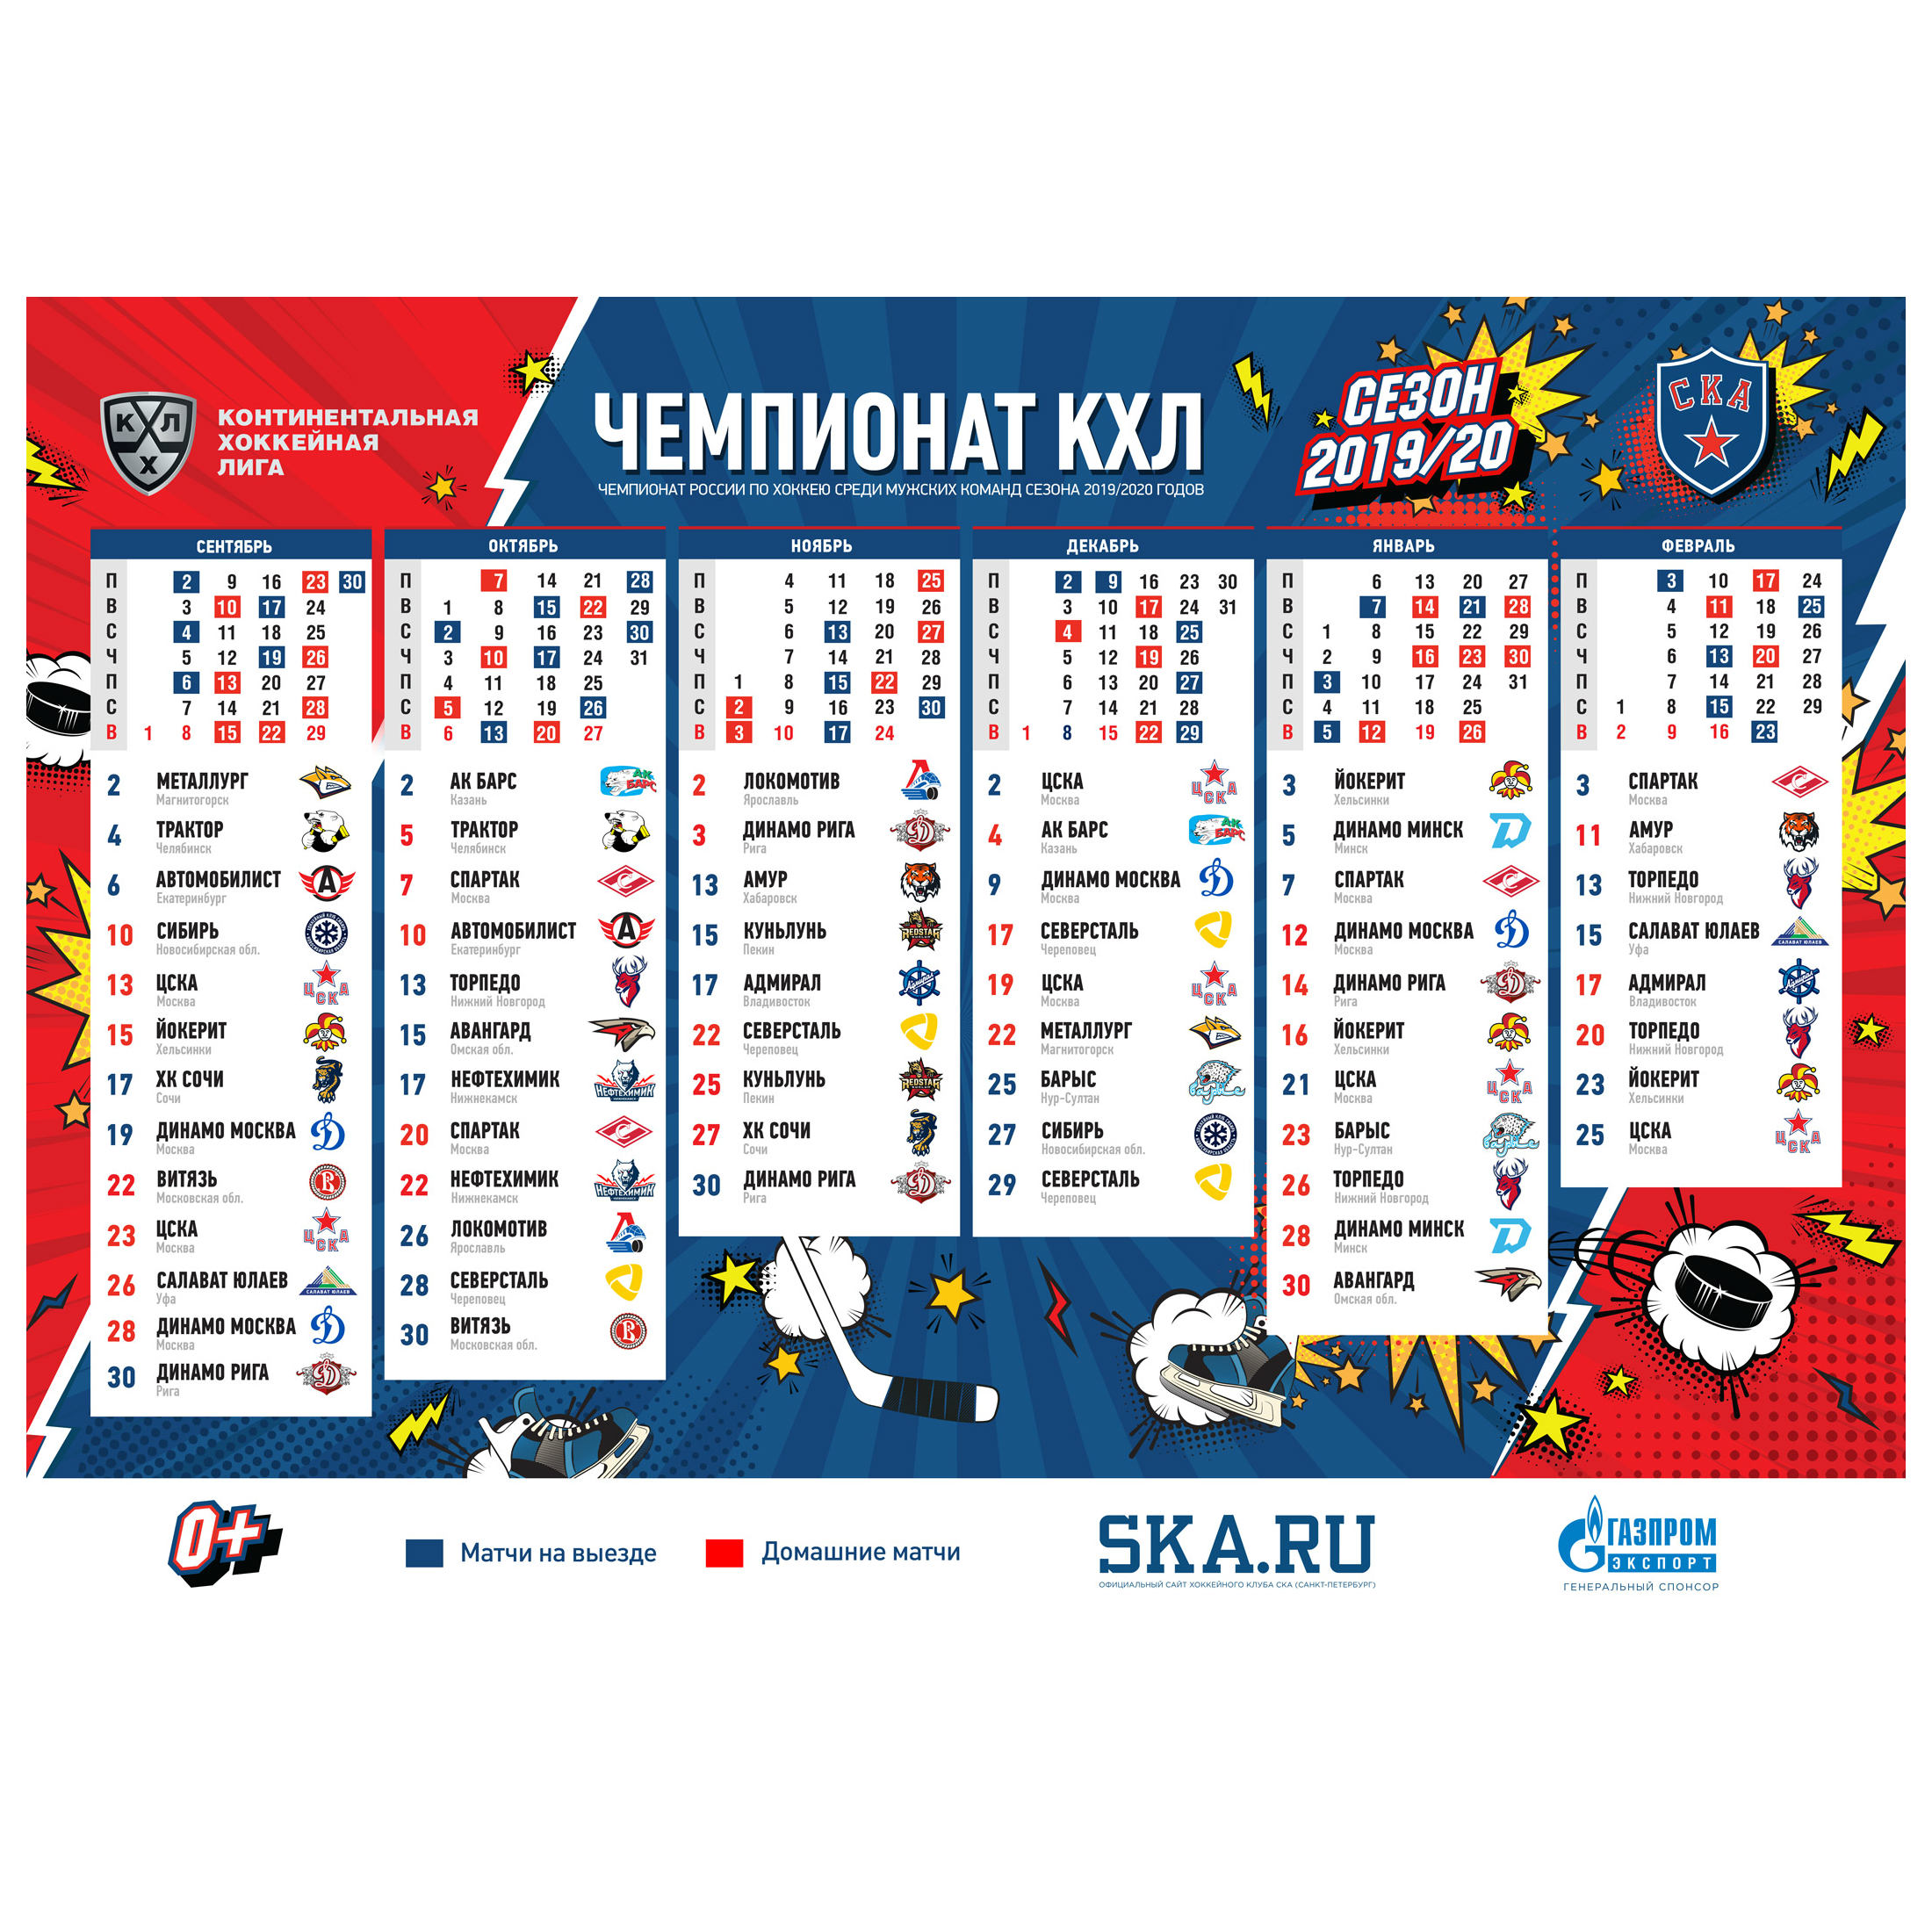 Календарь игр 2019/20, формат А2 купить за 20 руб. в интернет-магазине  Хоккейного клуба СКА